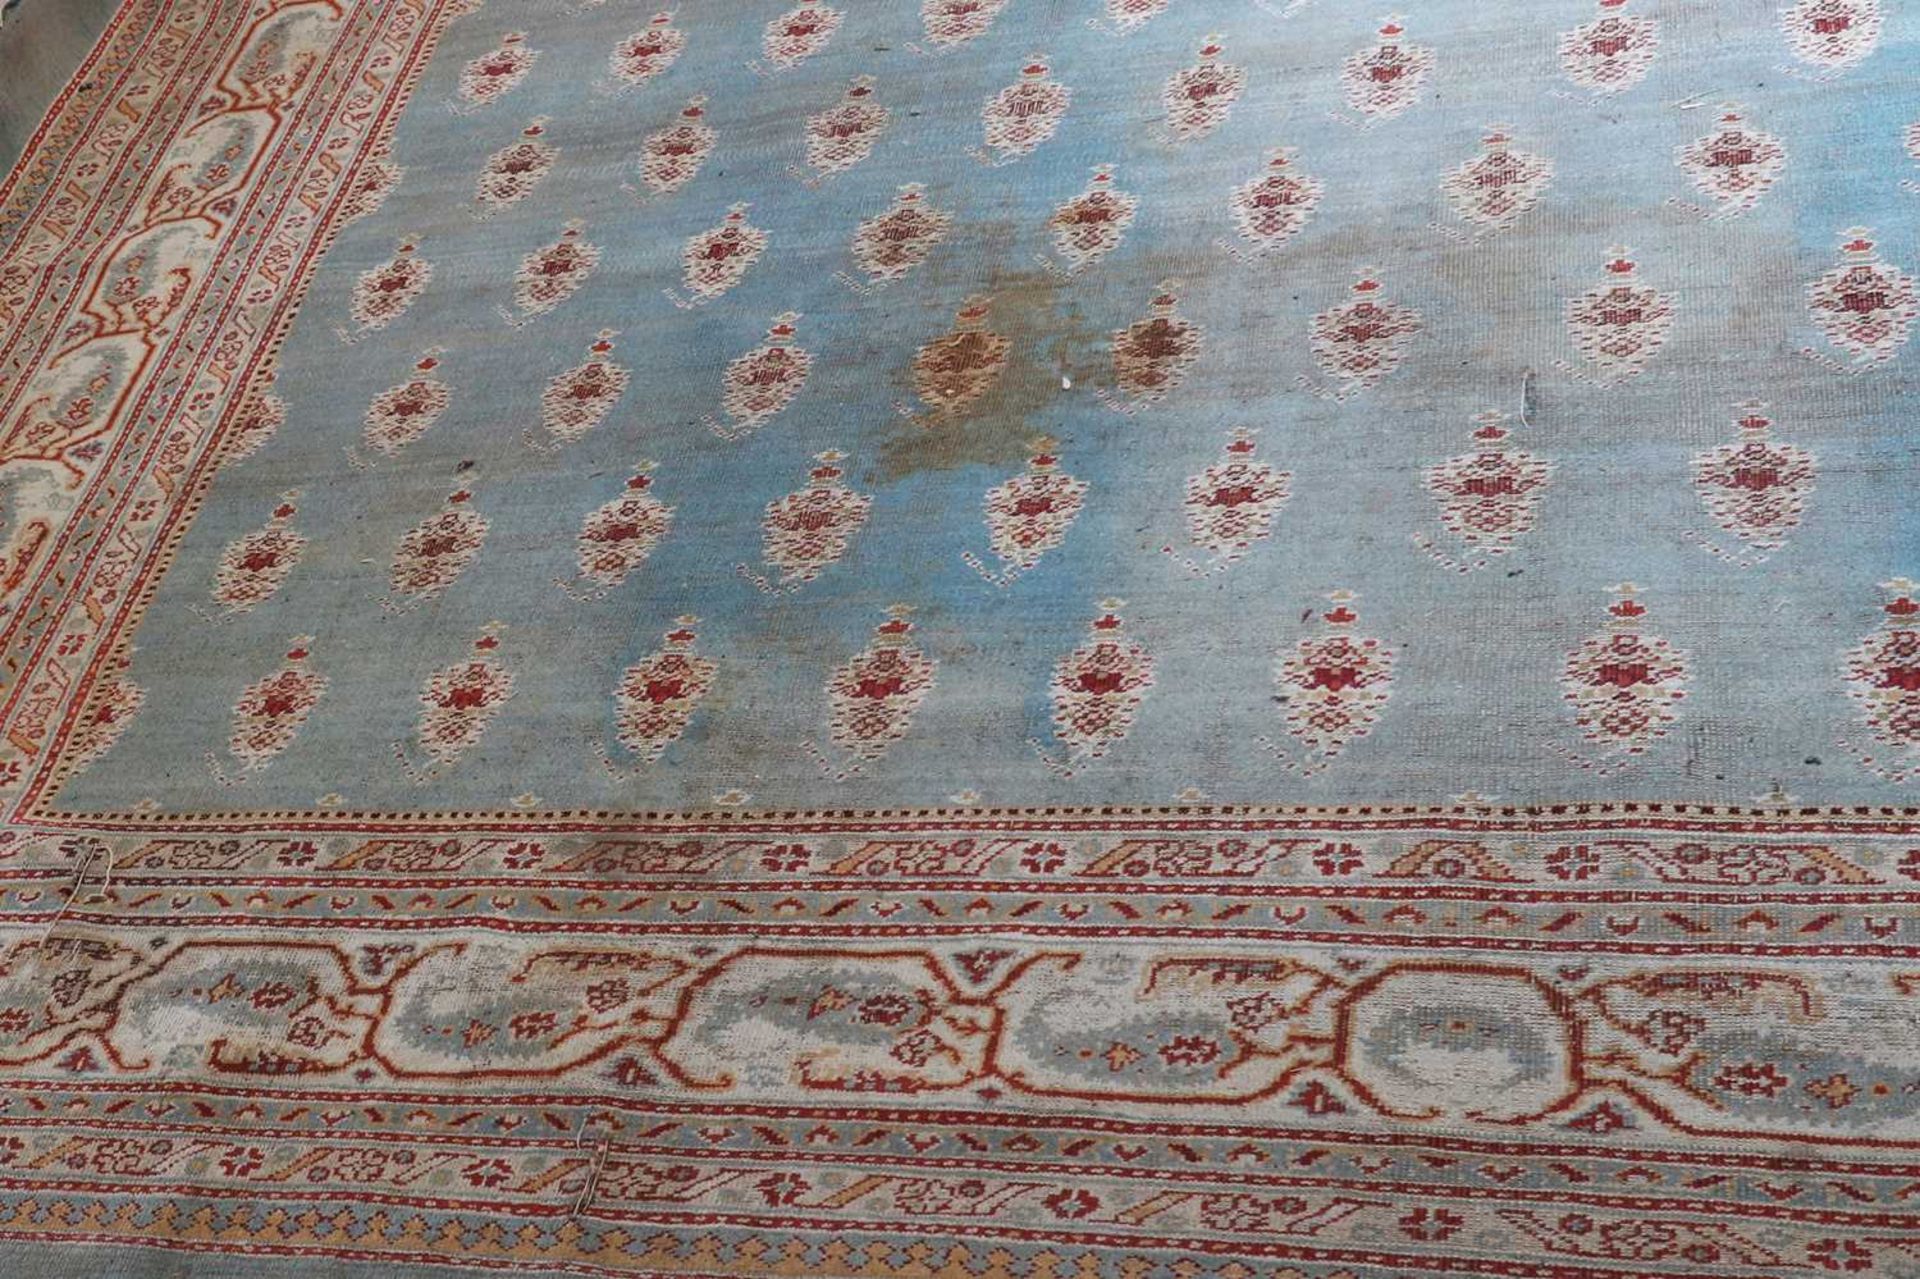 ☘ A large blue Amritsar carpet, - Image 4 of 38